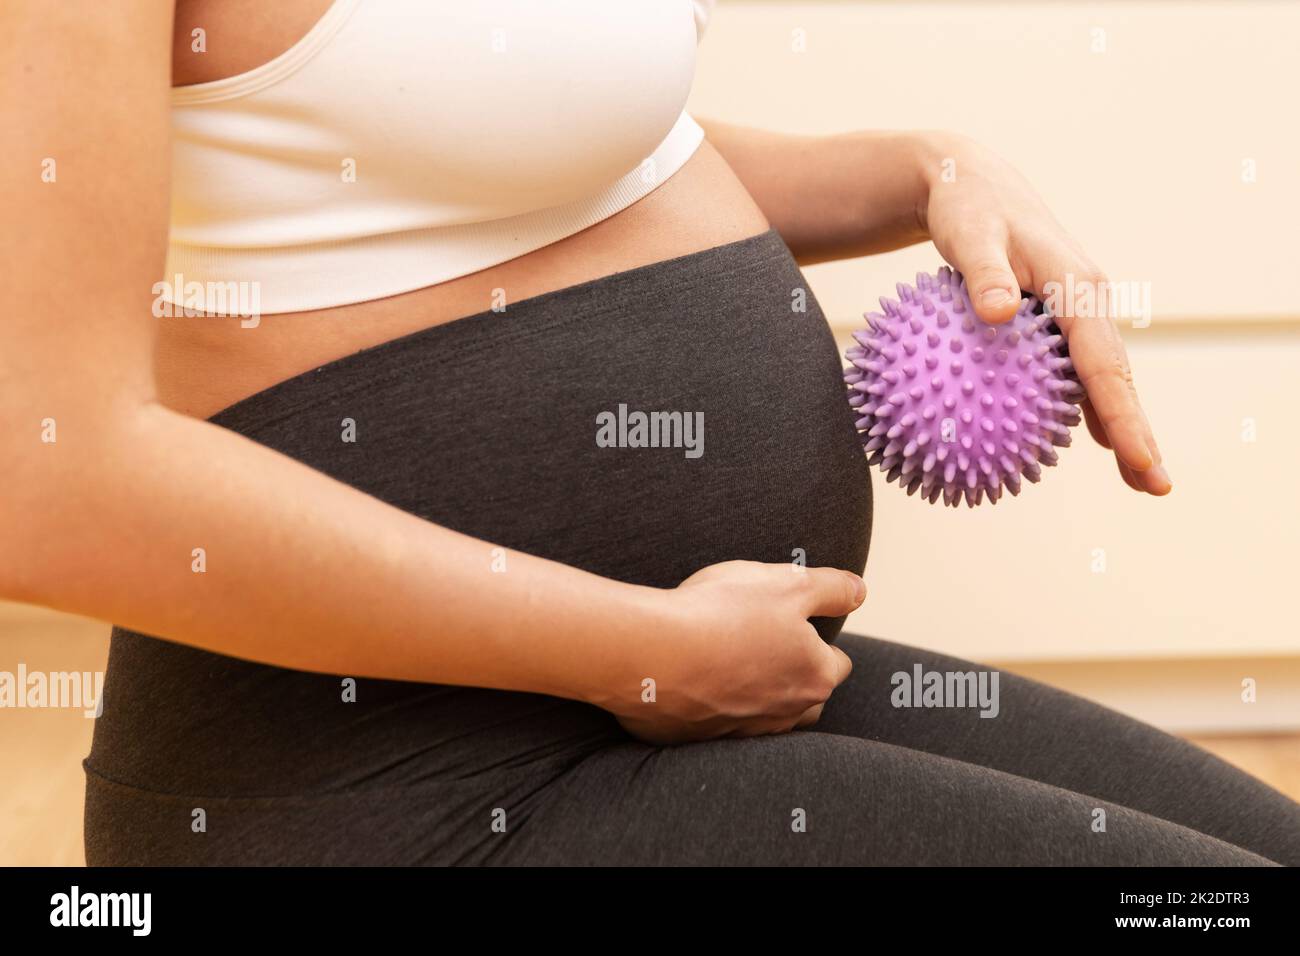 Eine Schwangerin massiert ihren Bauch mit einem stacheligen Gummiball Stockfoto